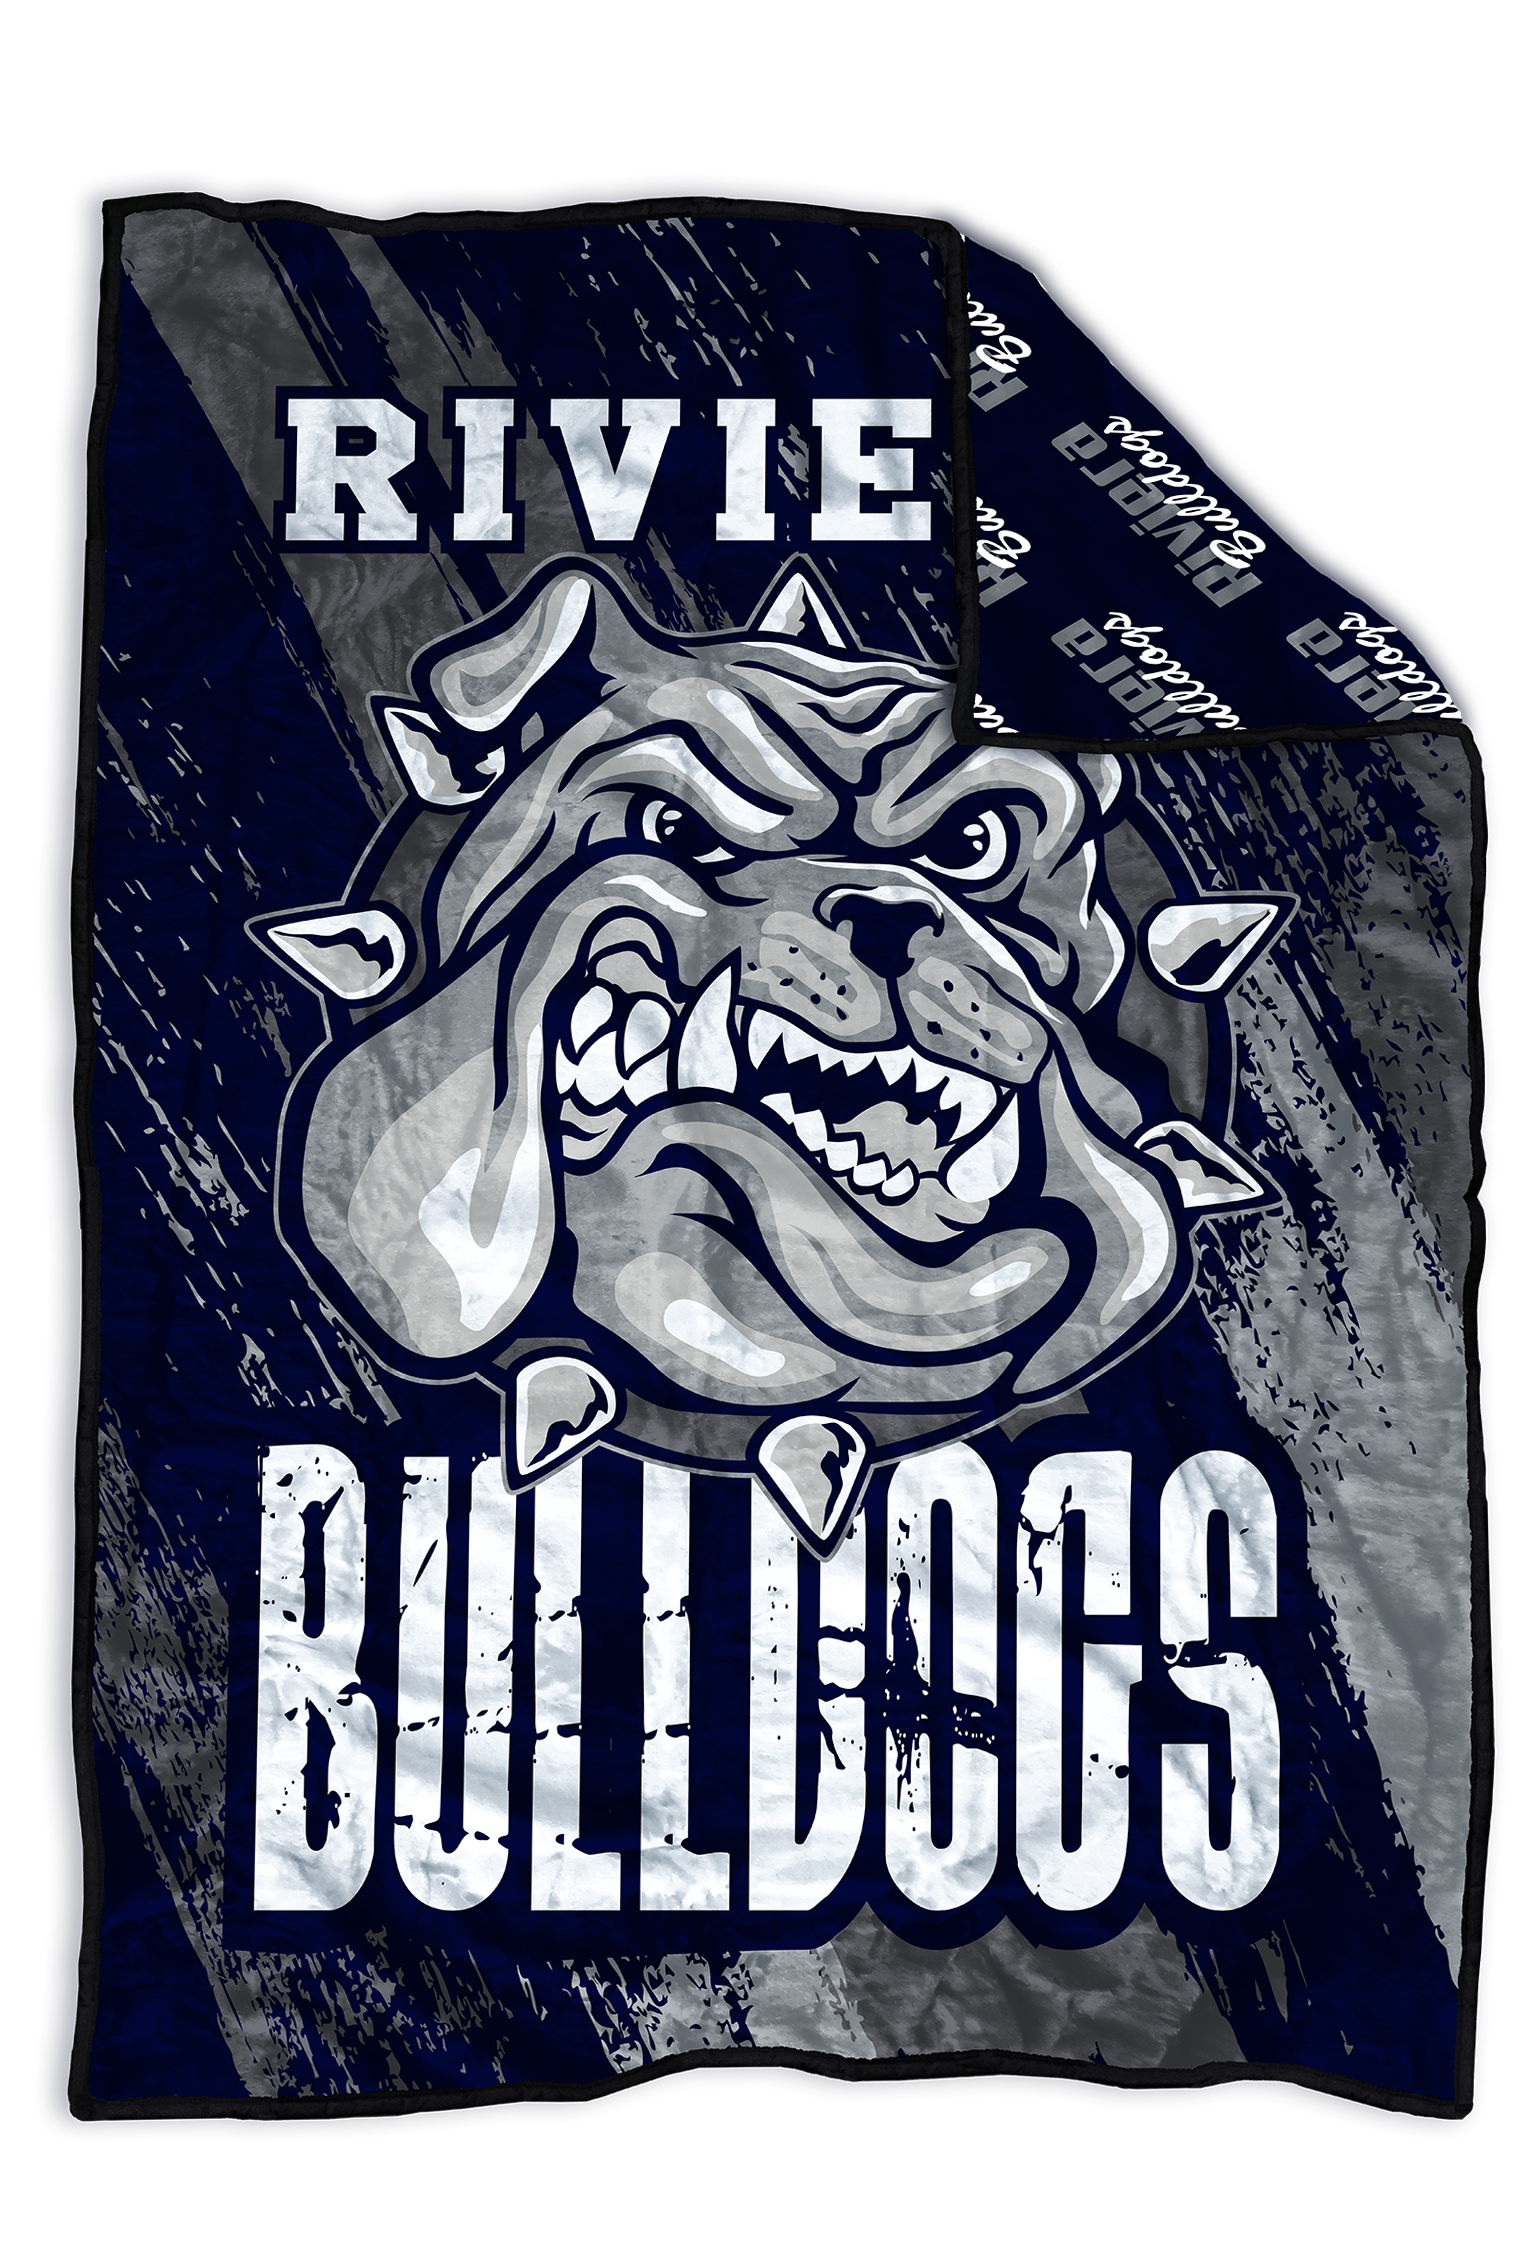 Riviera Bulldogs